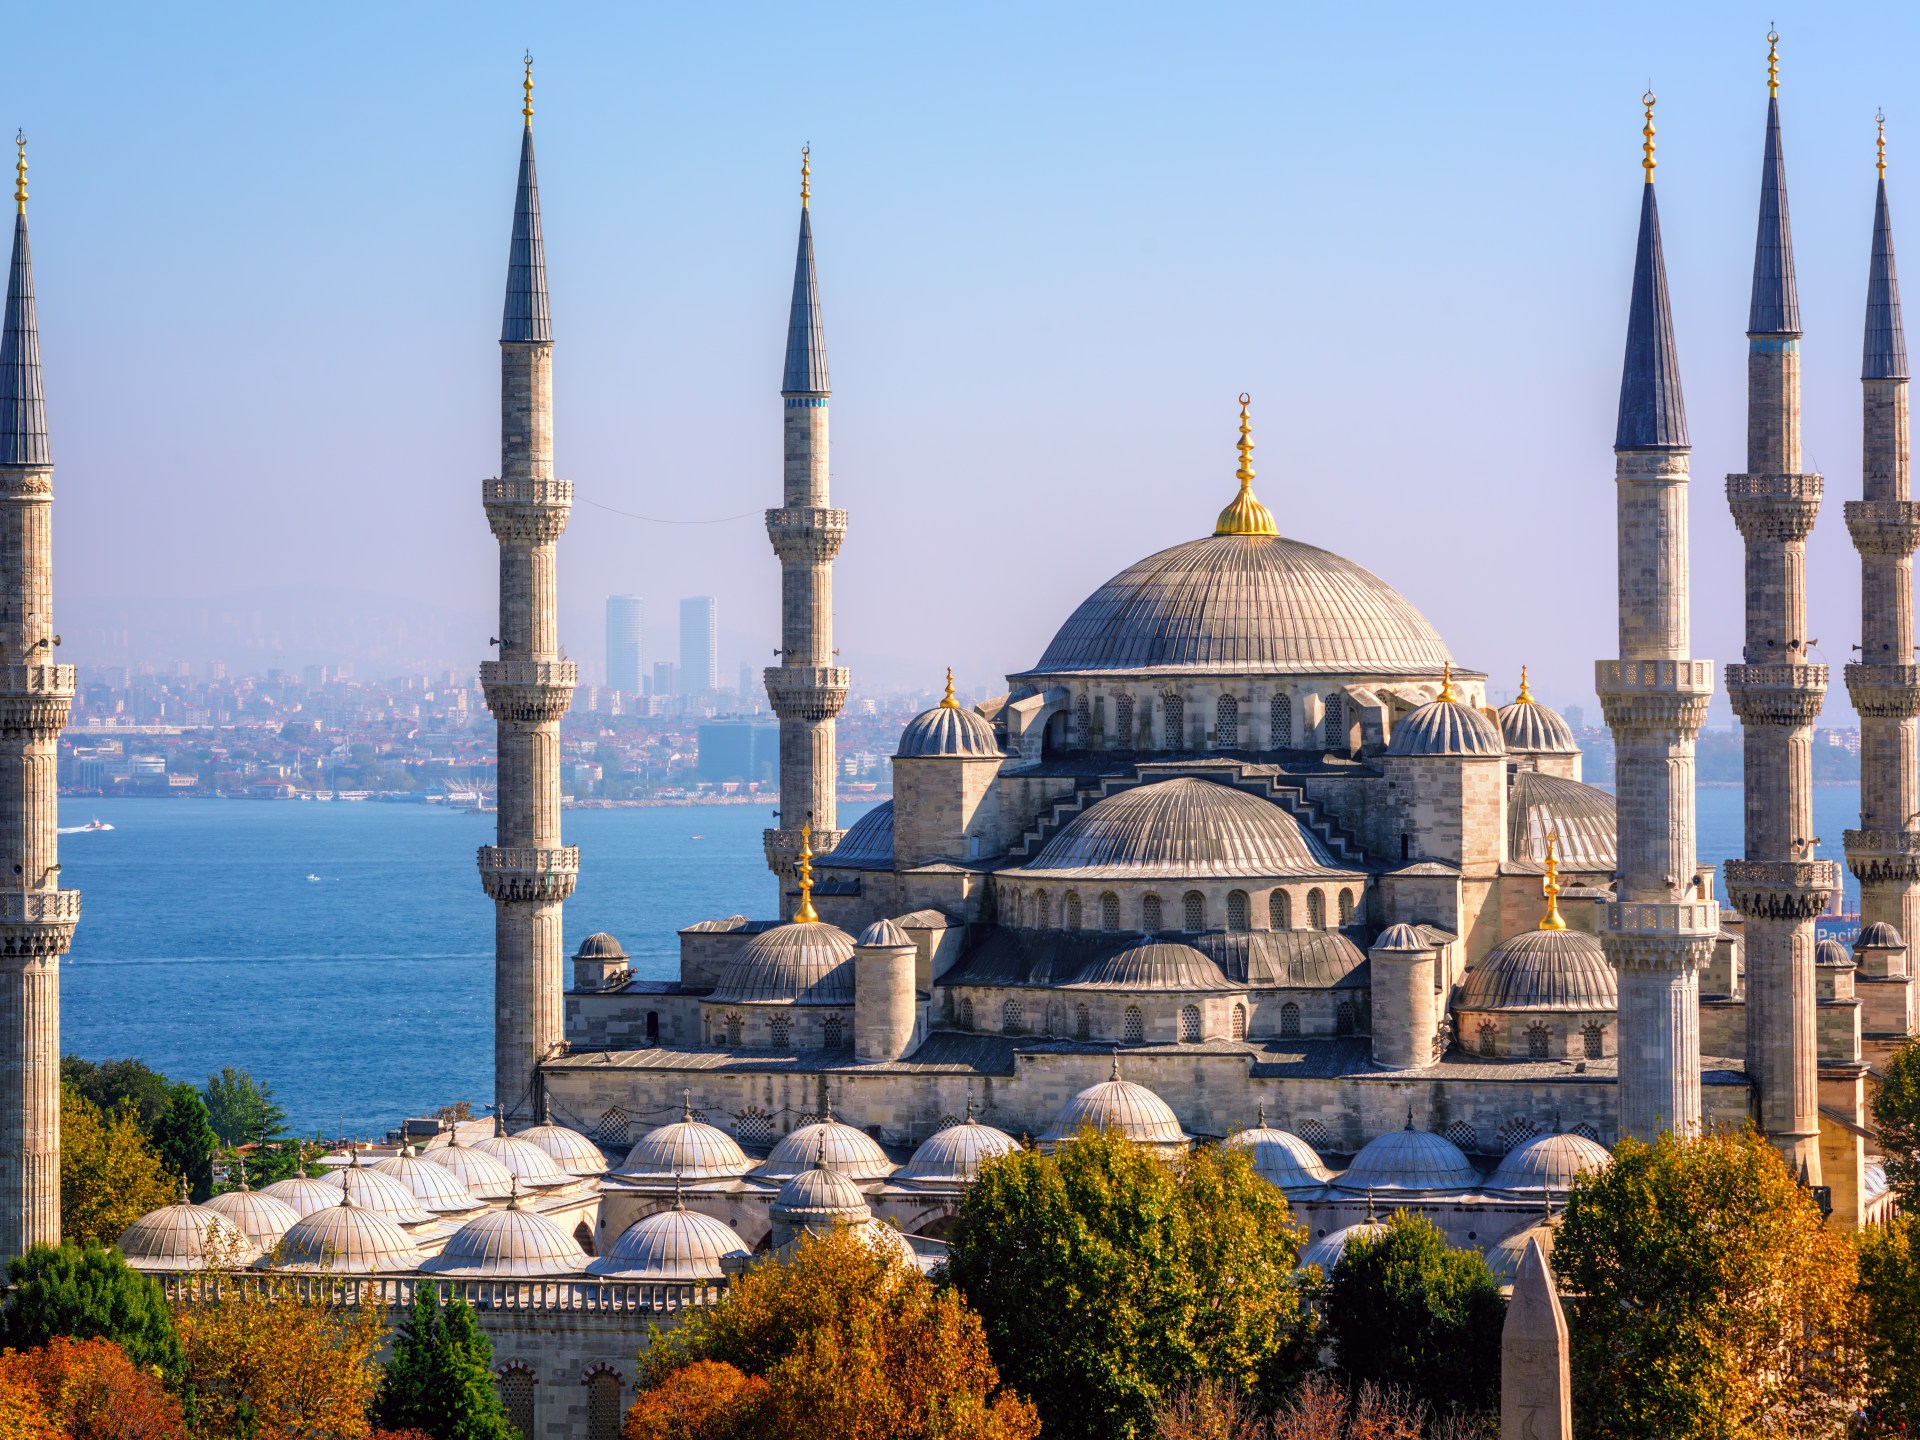 53 مليون سائح زاروا تركيا في 11 شهرا | اقتصاد – البوكس نيوز